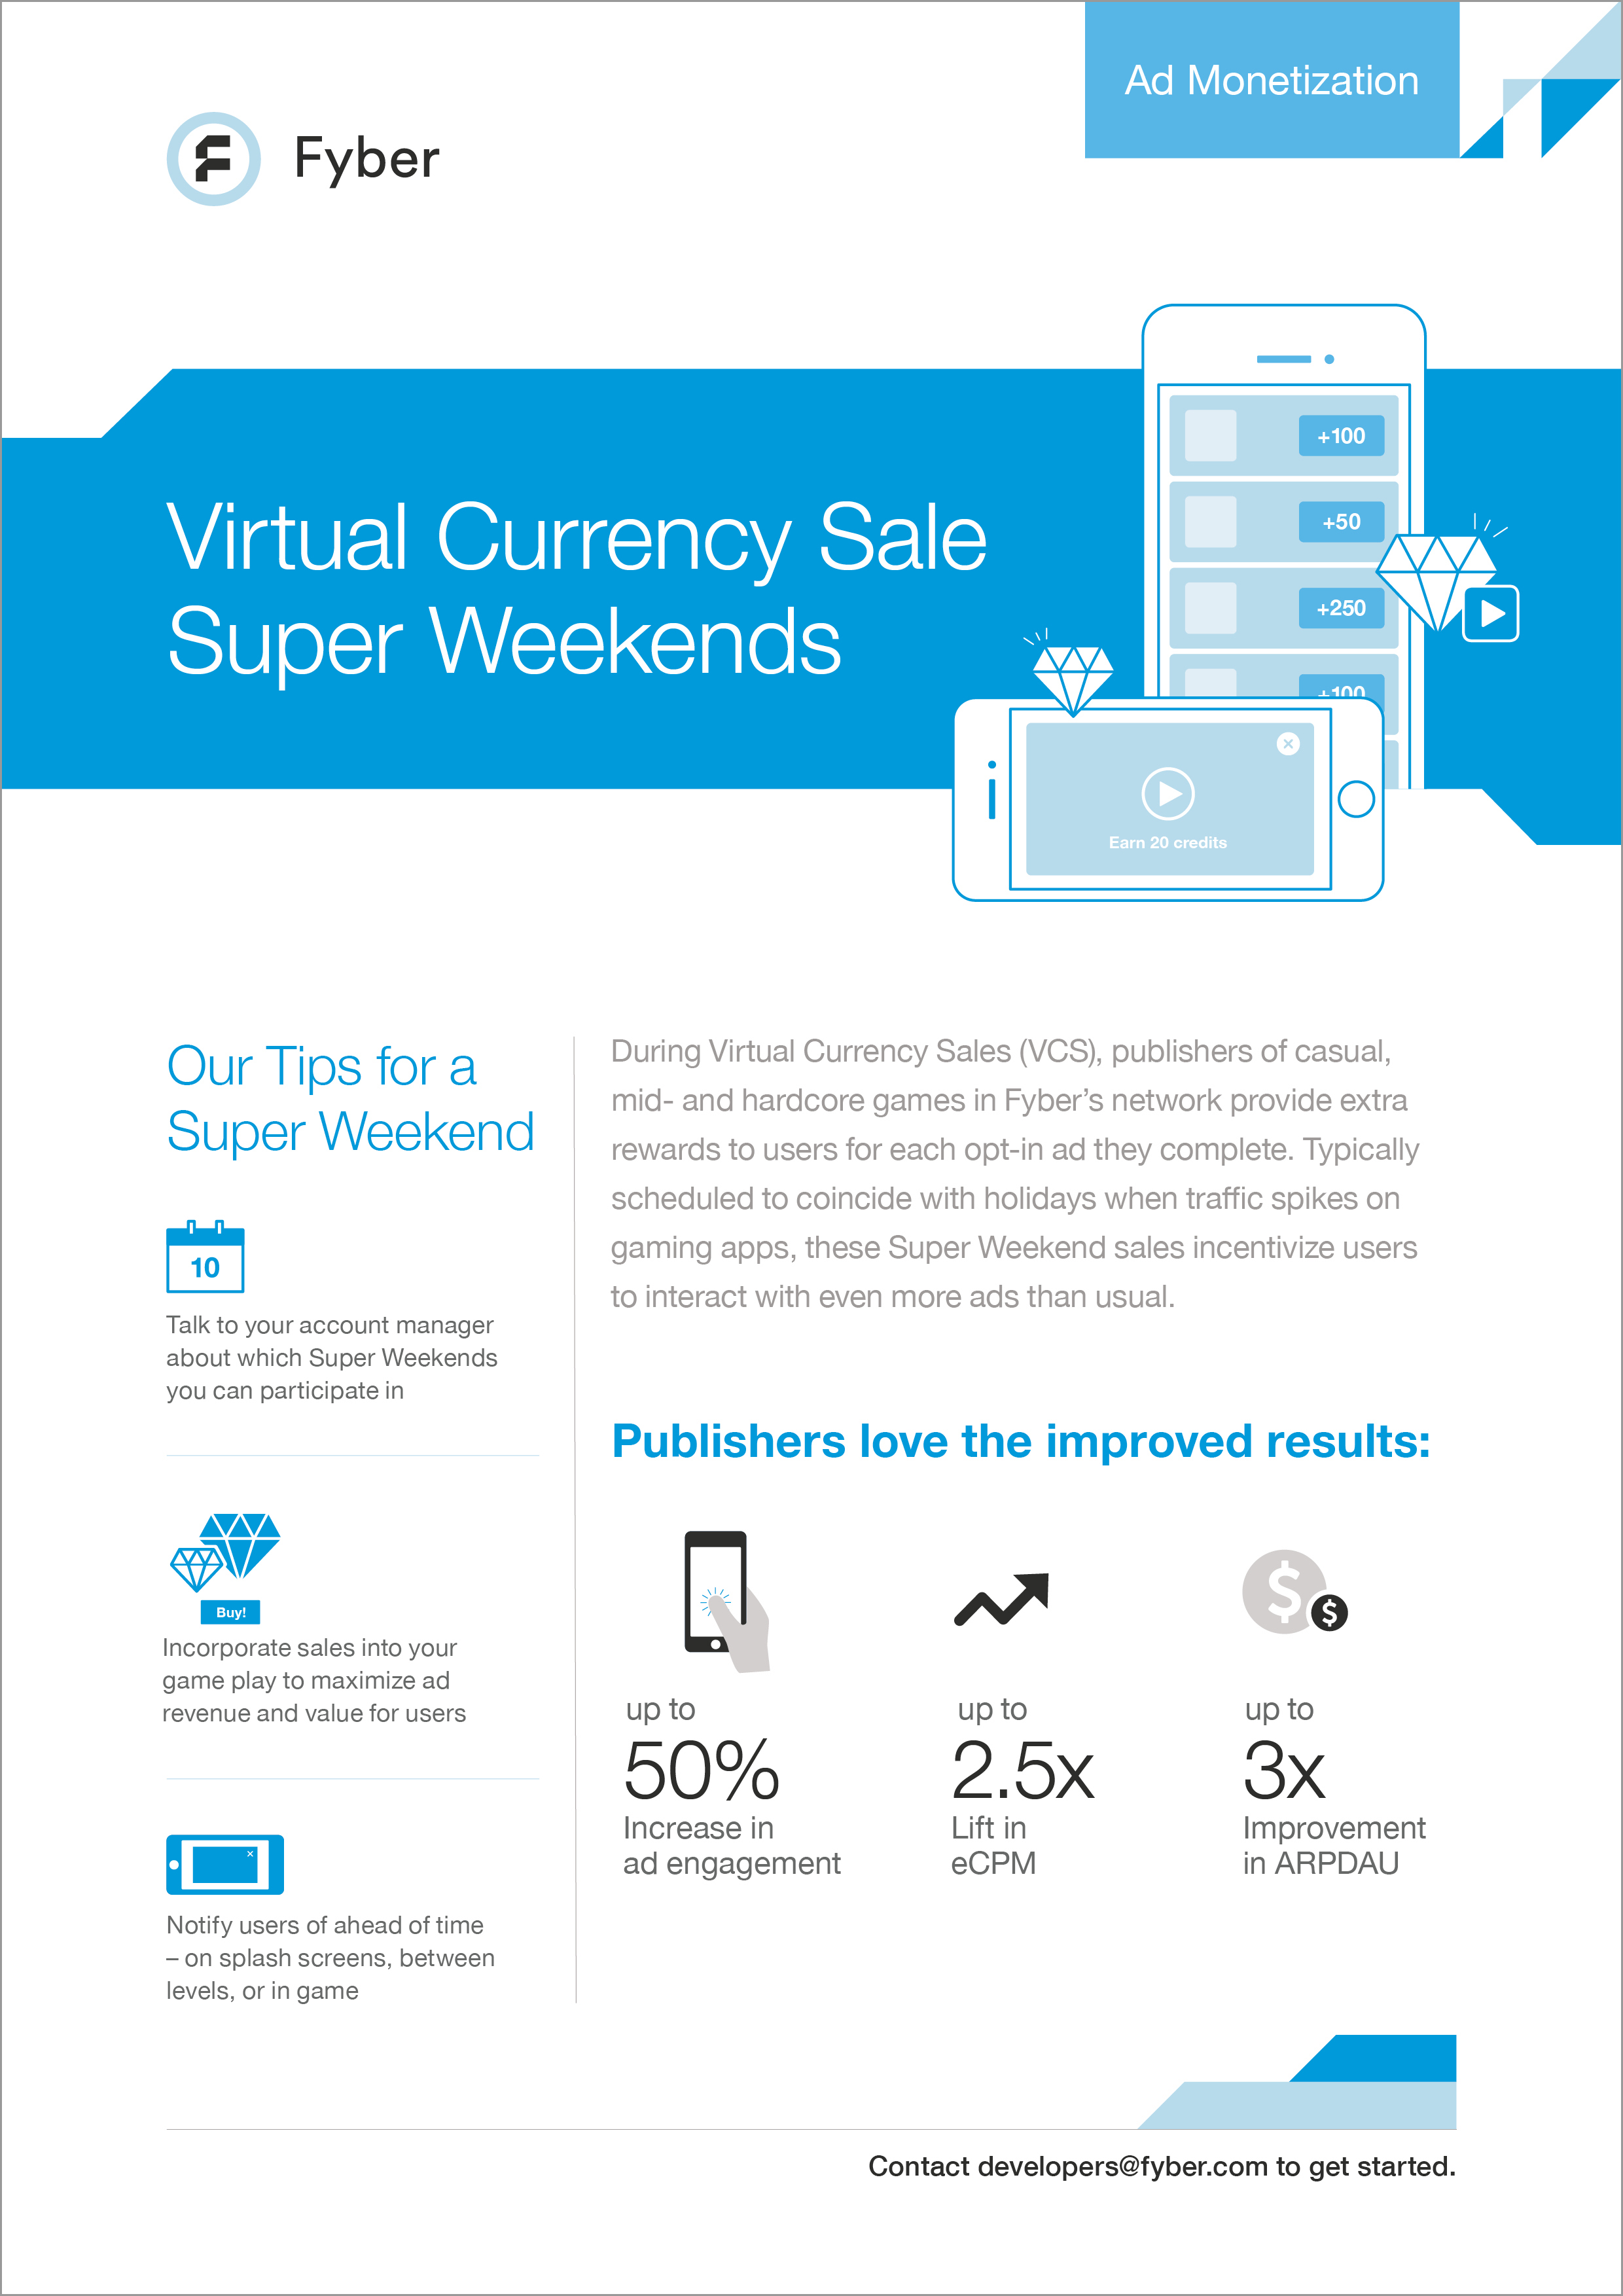 Fyber Virtual Currency Sale Super Weekend